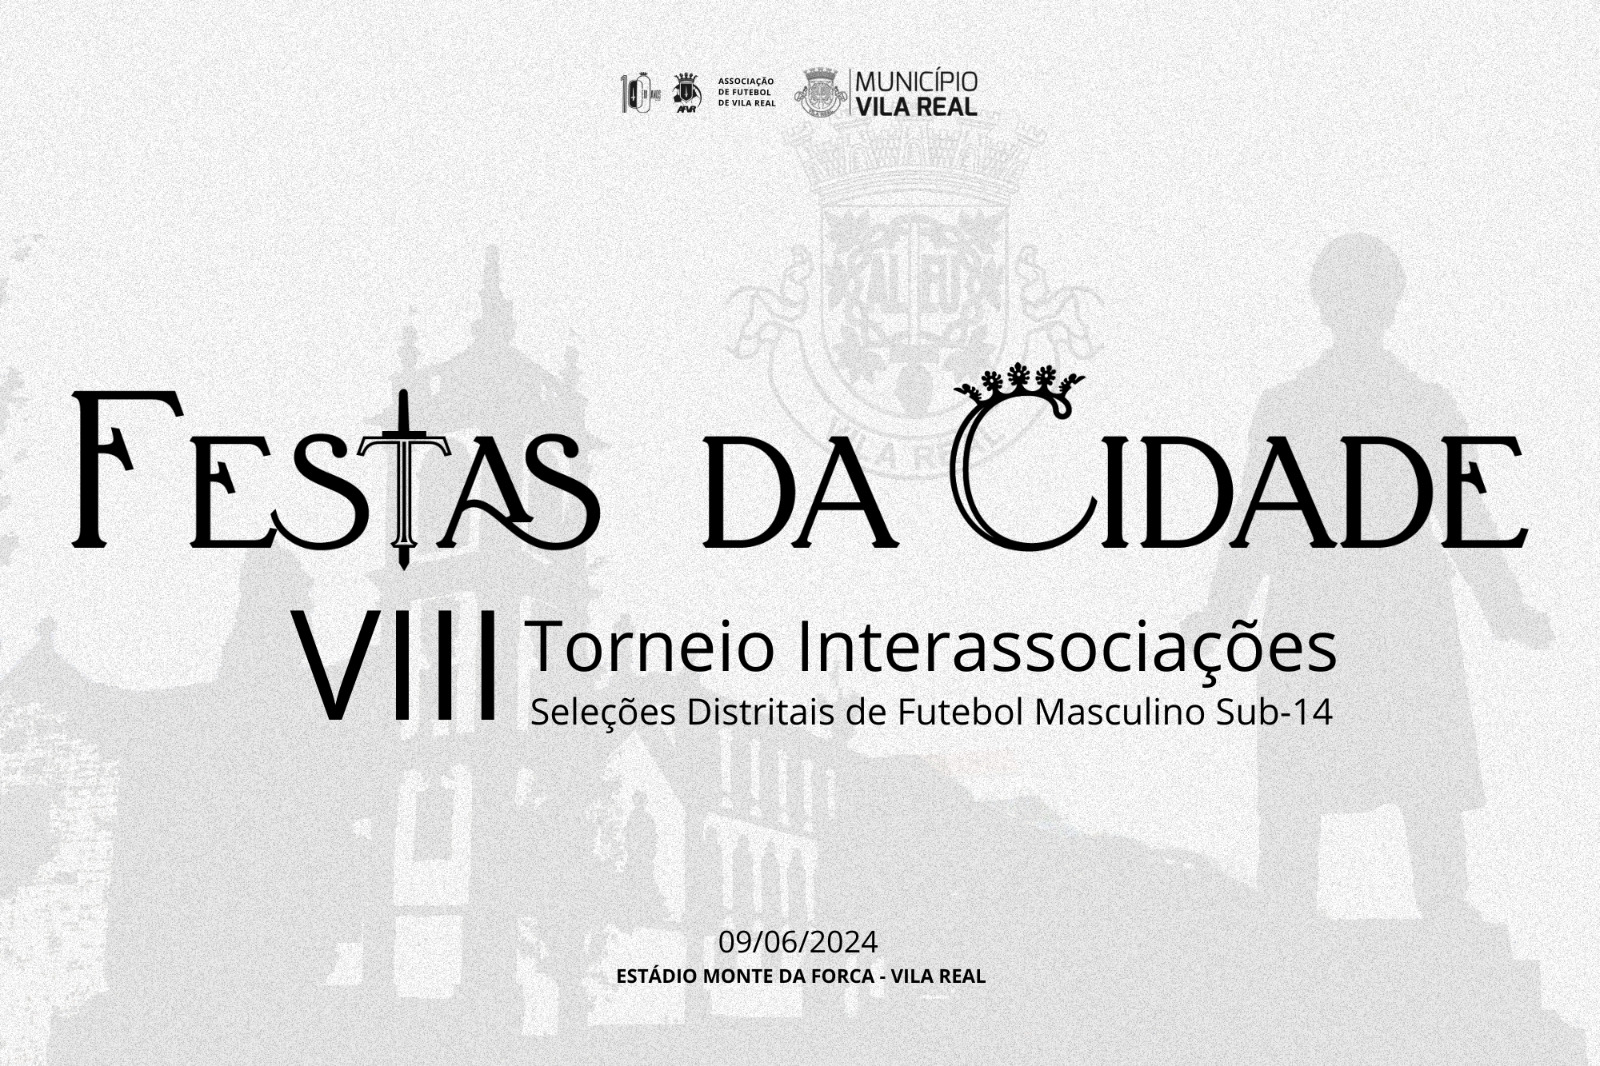 VIII Torneio Interassociações "Festas da Cidade" de Vila Real